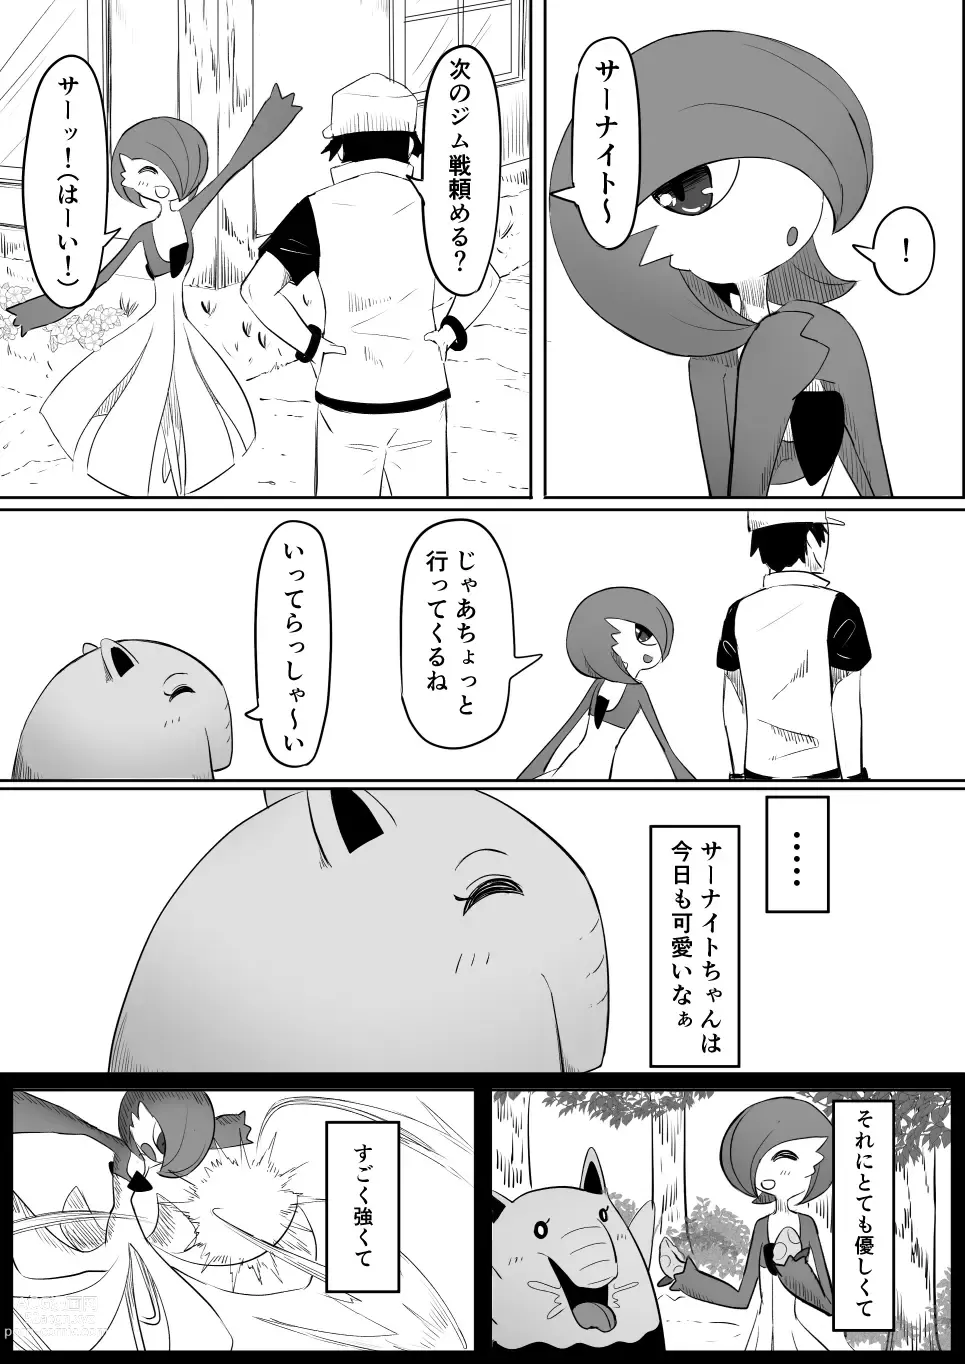 Page 7 of doujinshi Koi o Shita Sleeper-chan.